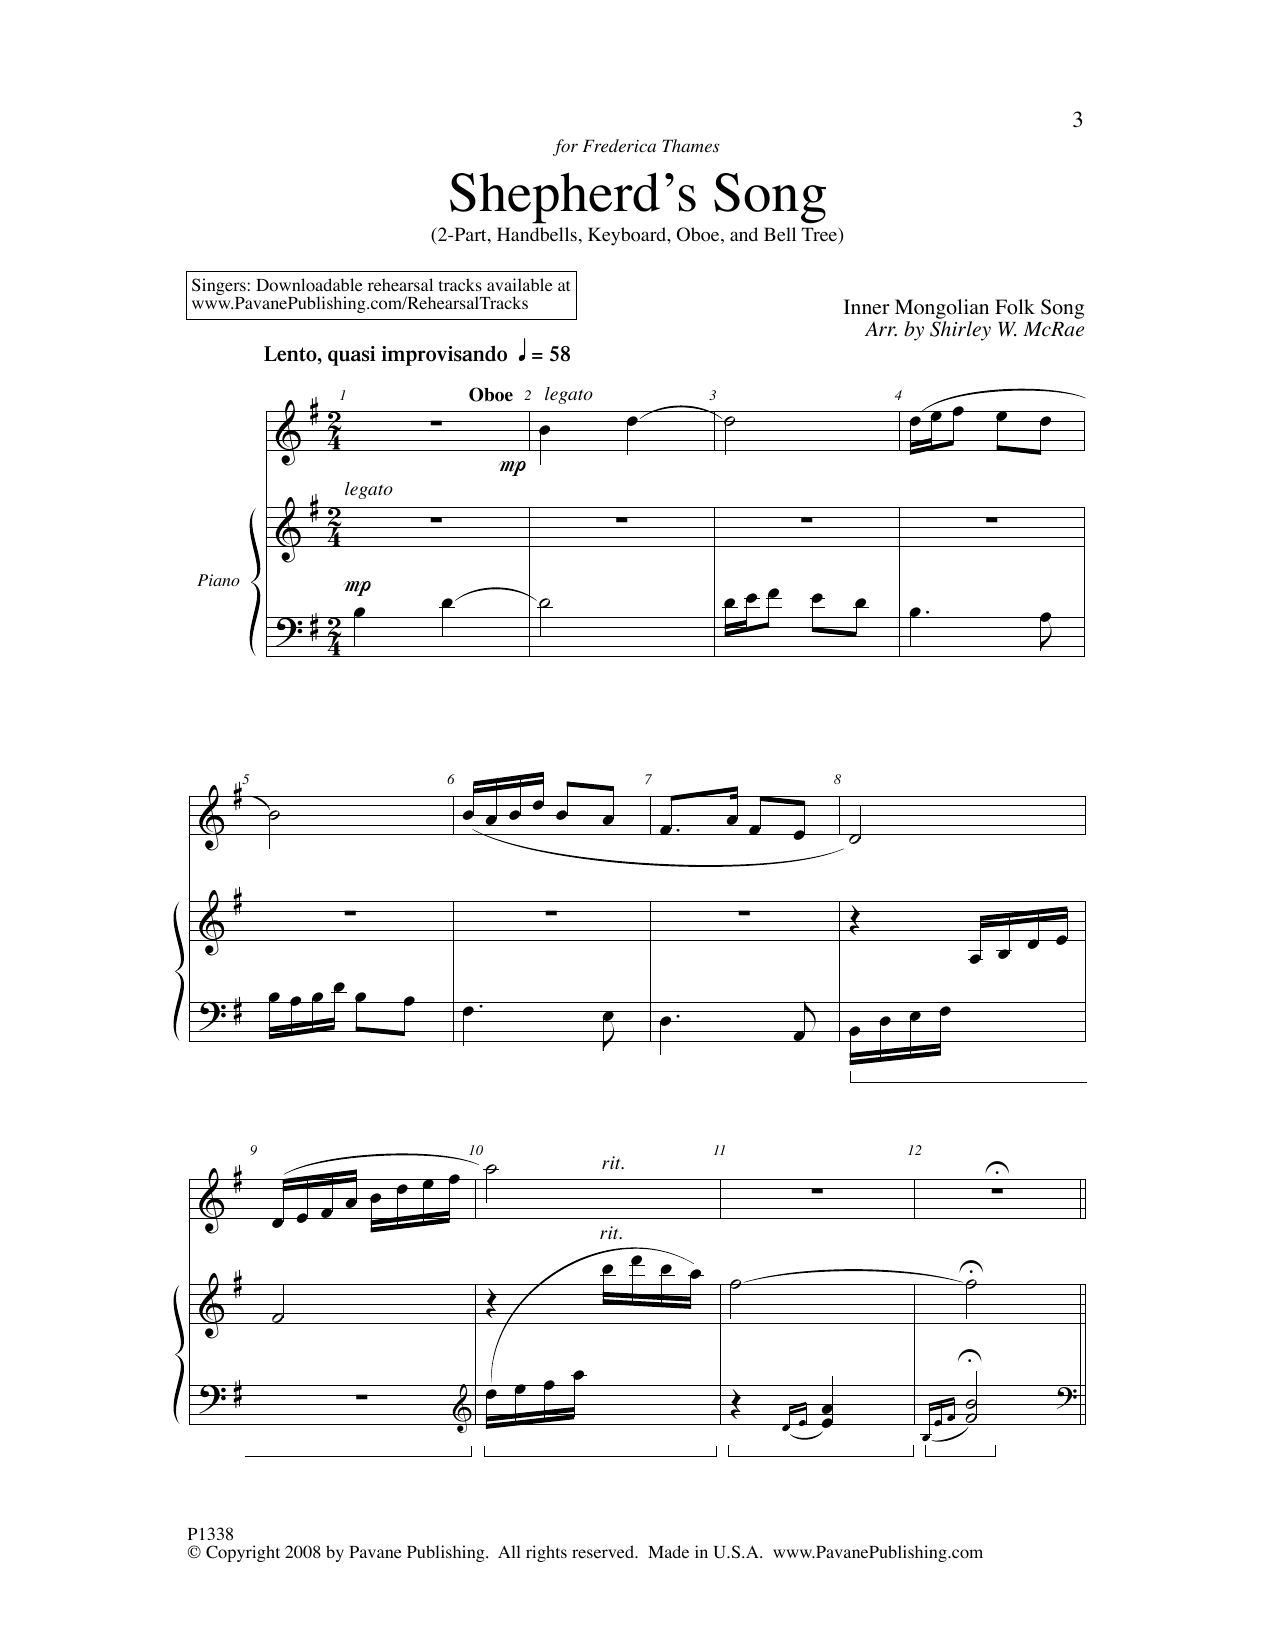 Download Shirley W. McRae Shepherd's Song Sheet Music